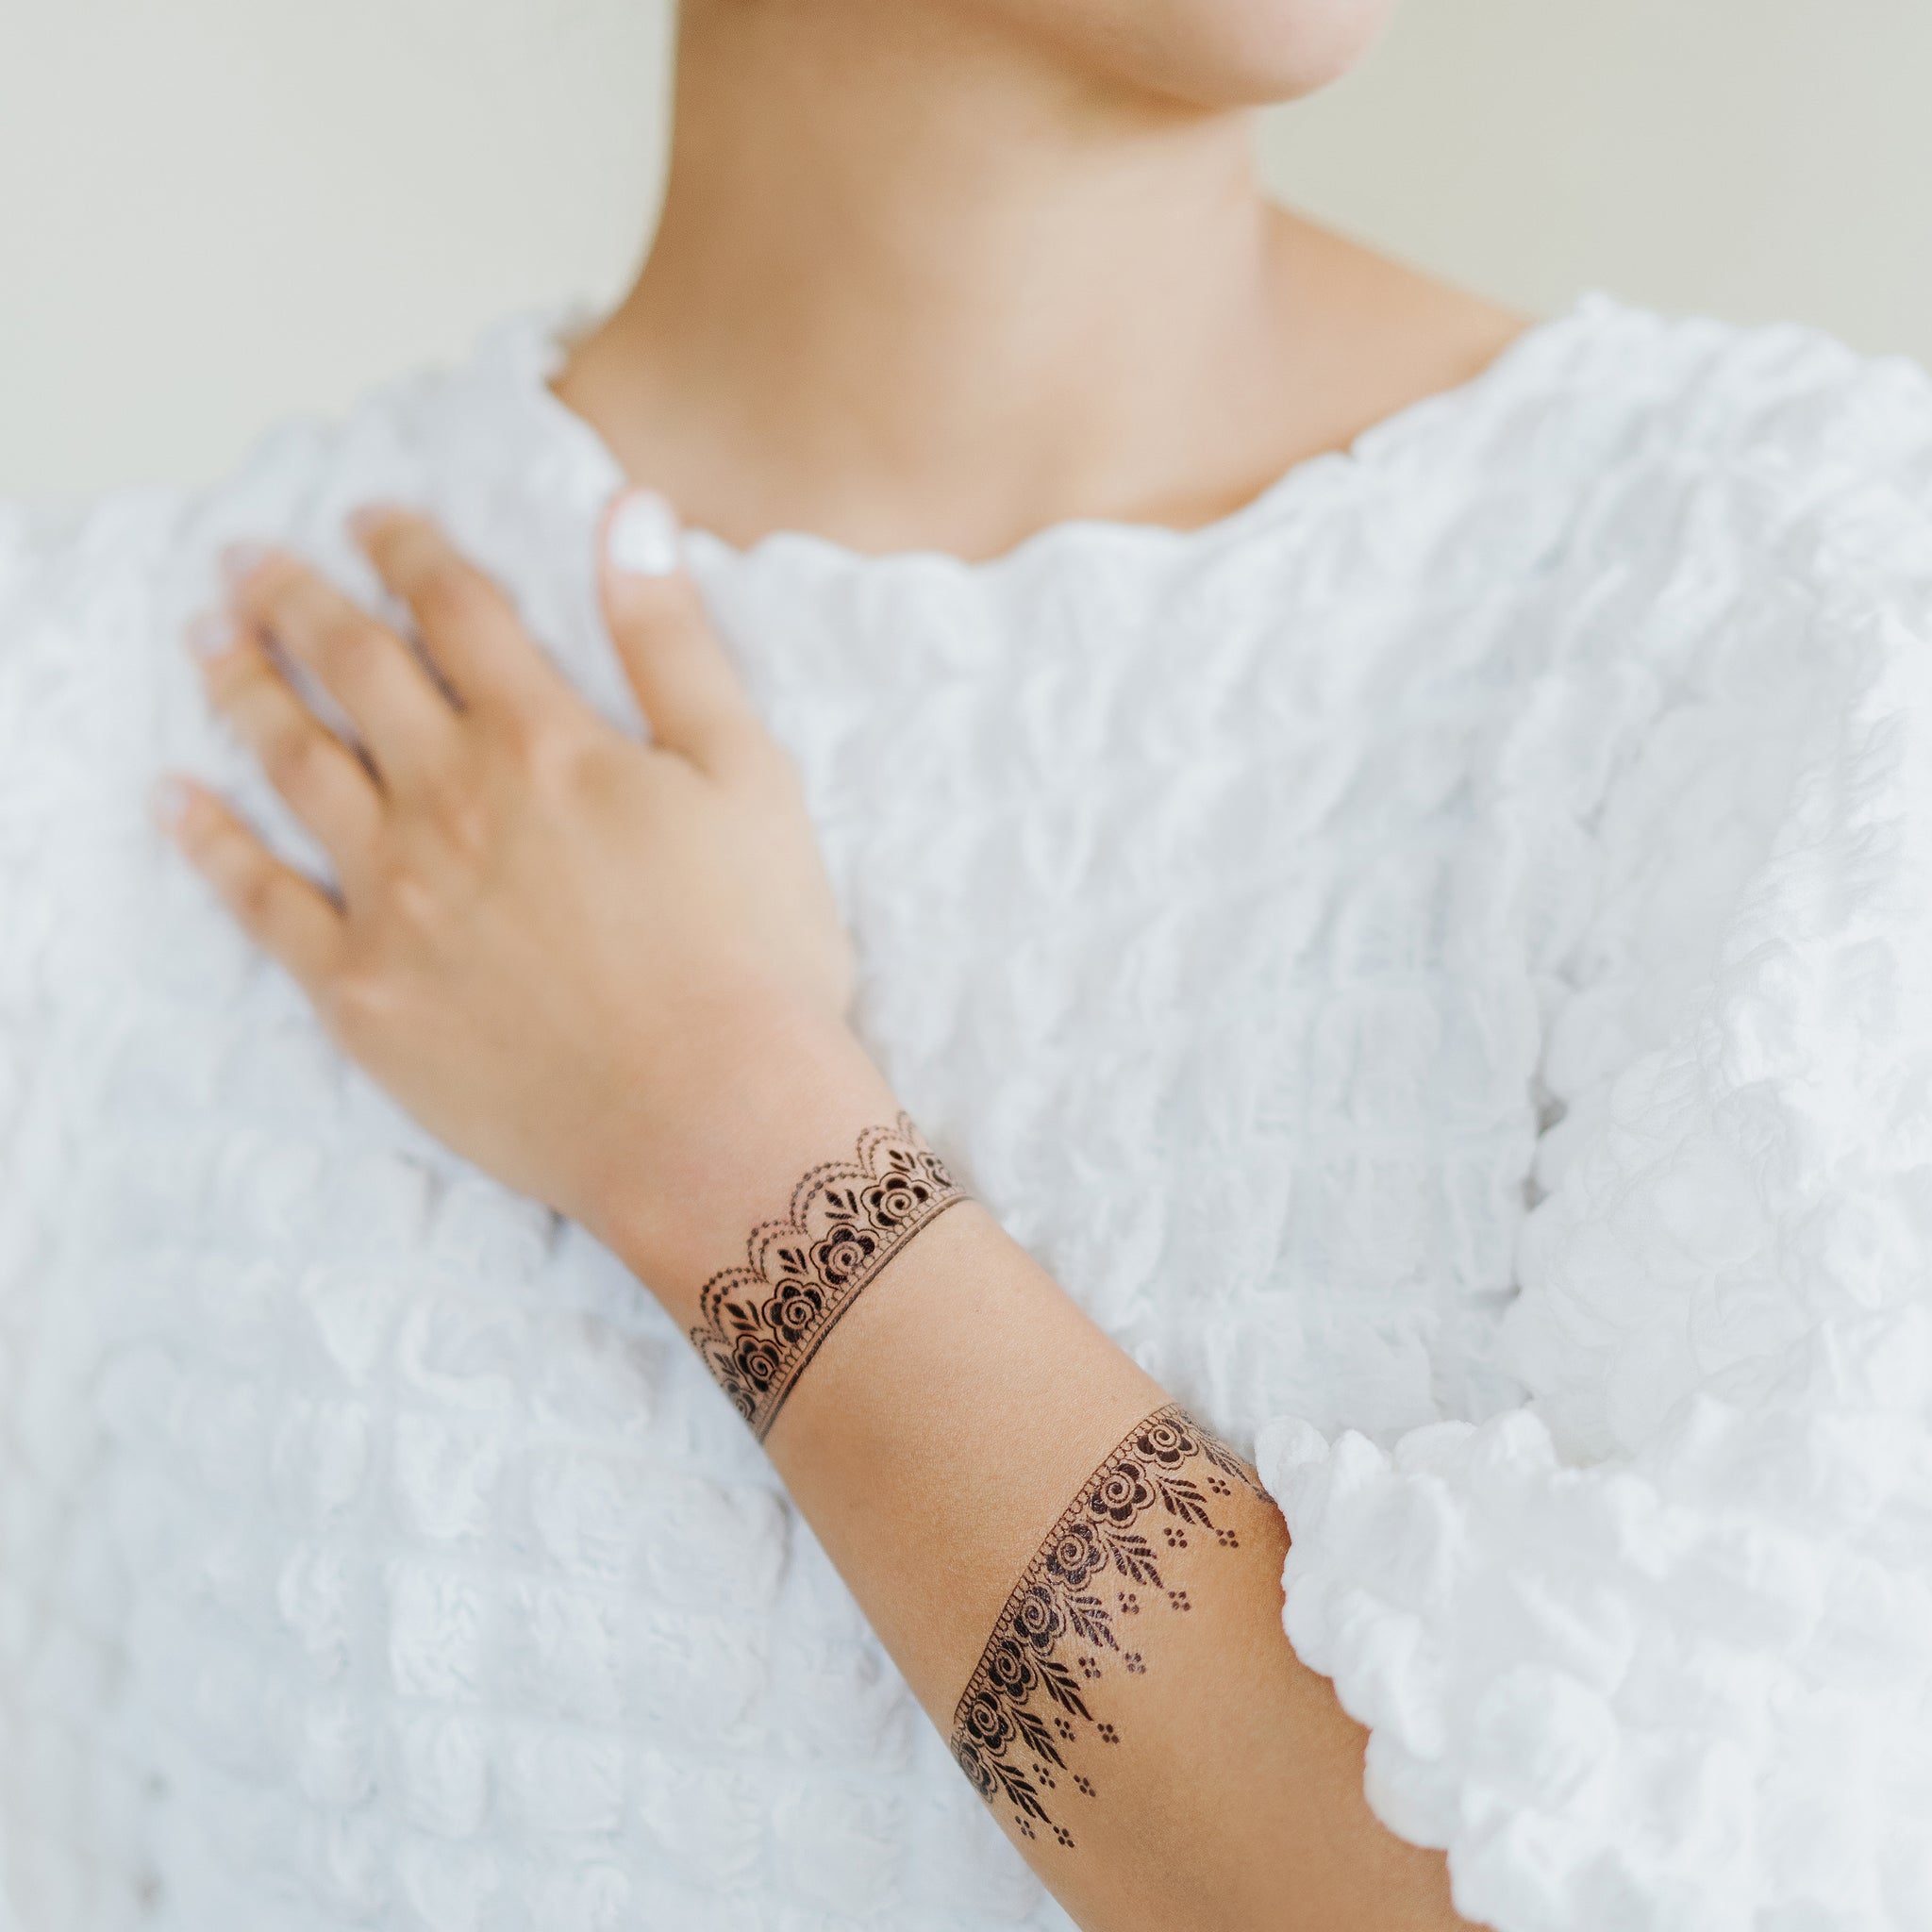 Amazon.com: Henna Temporary Tattoos